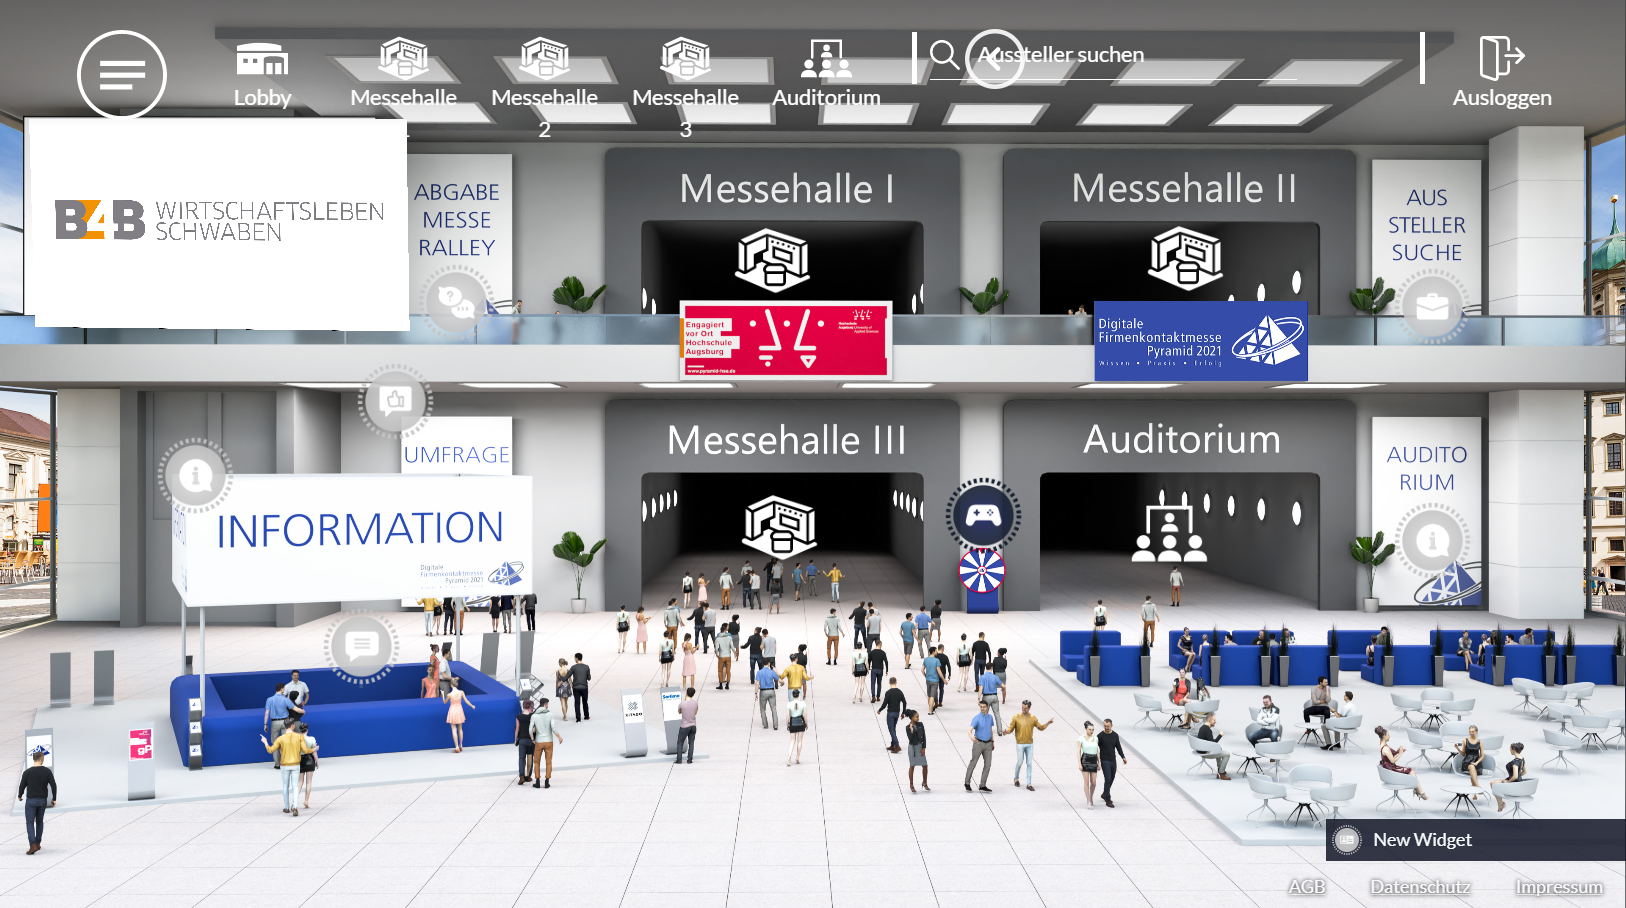 Eingangshalle der virtuellen Firmenkontaktmesse Pyramid 2021.